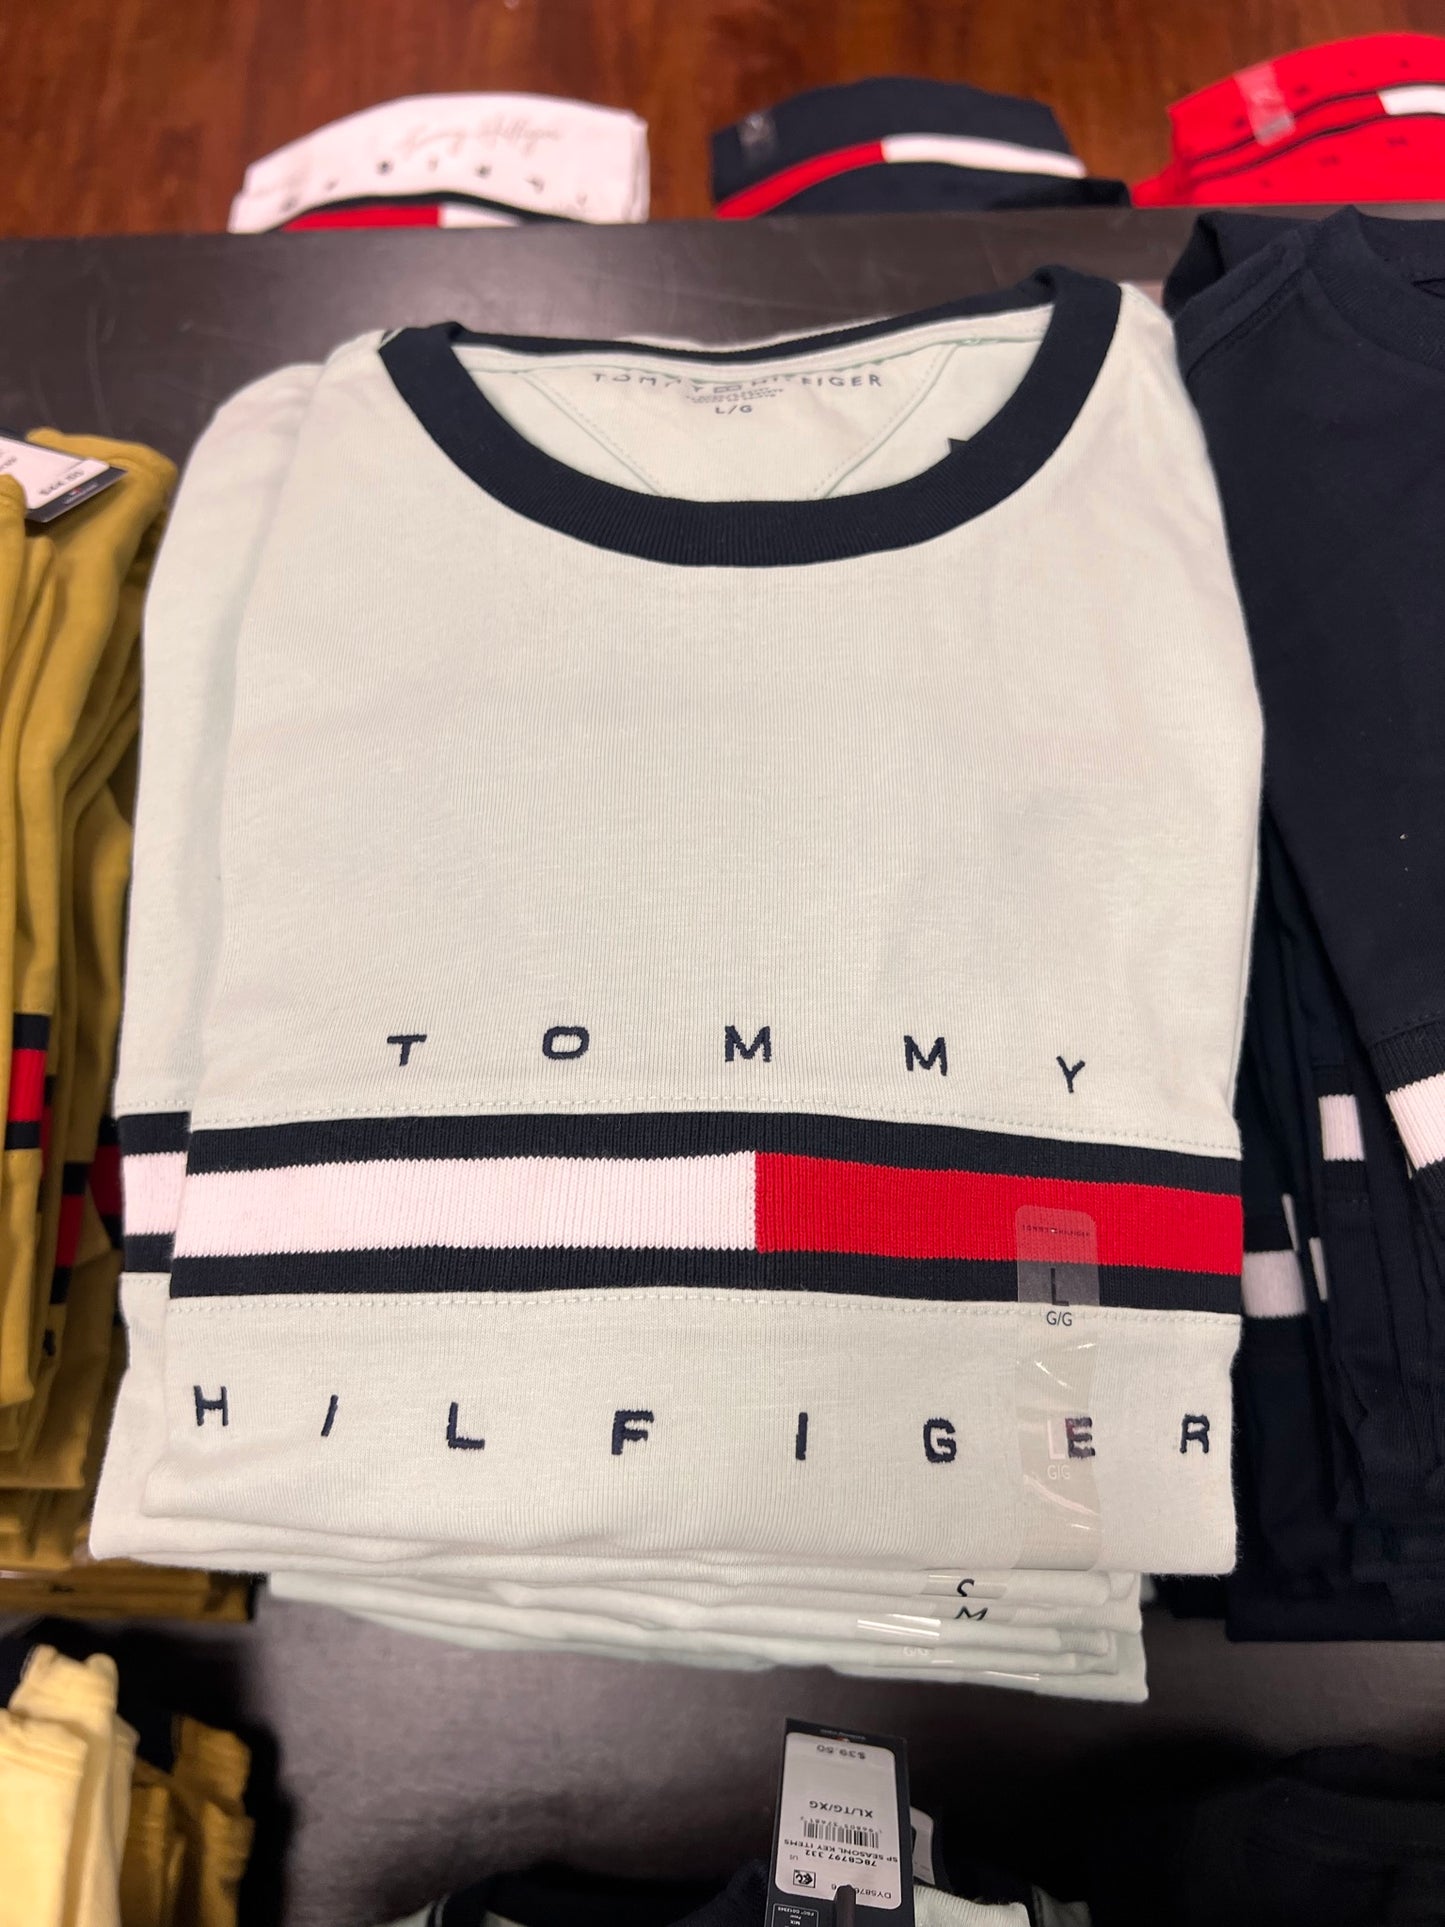 Camiseta TOMMY HILFIGER masculina com detalhe no peito